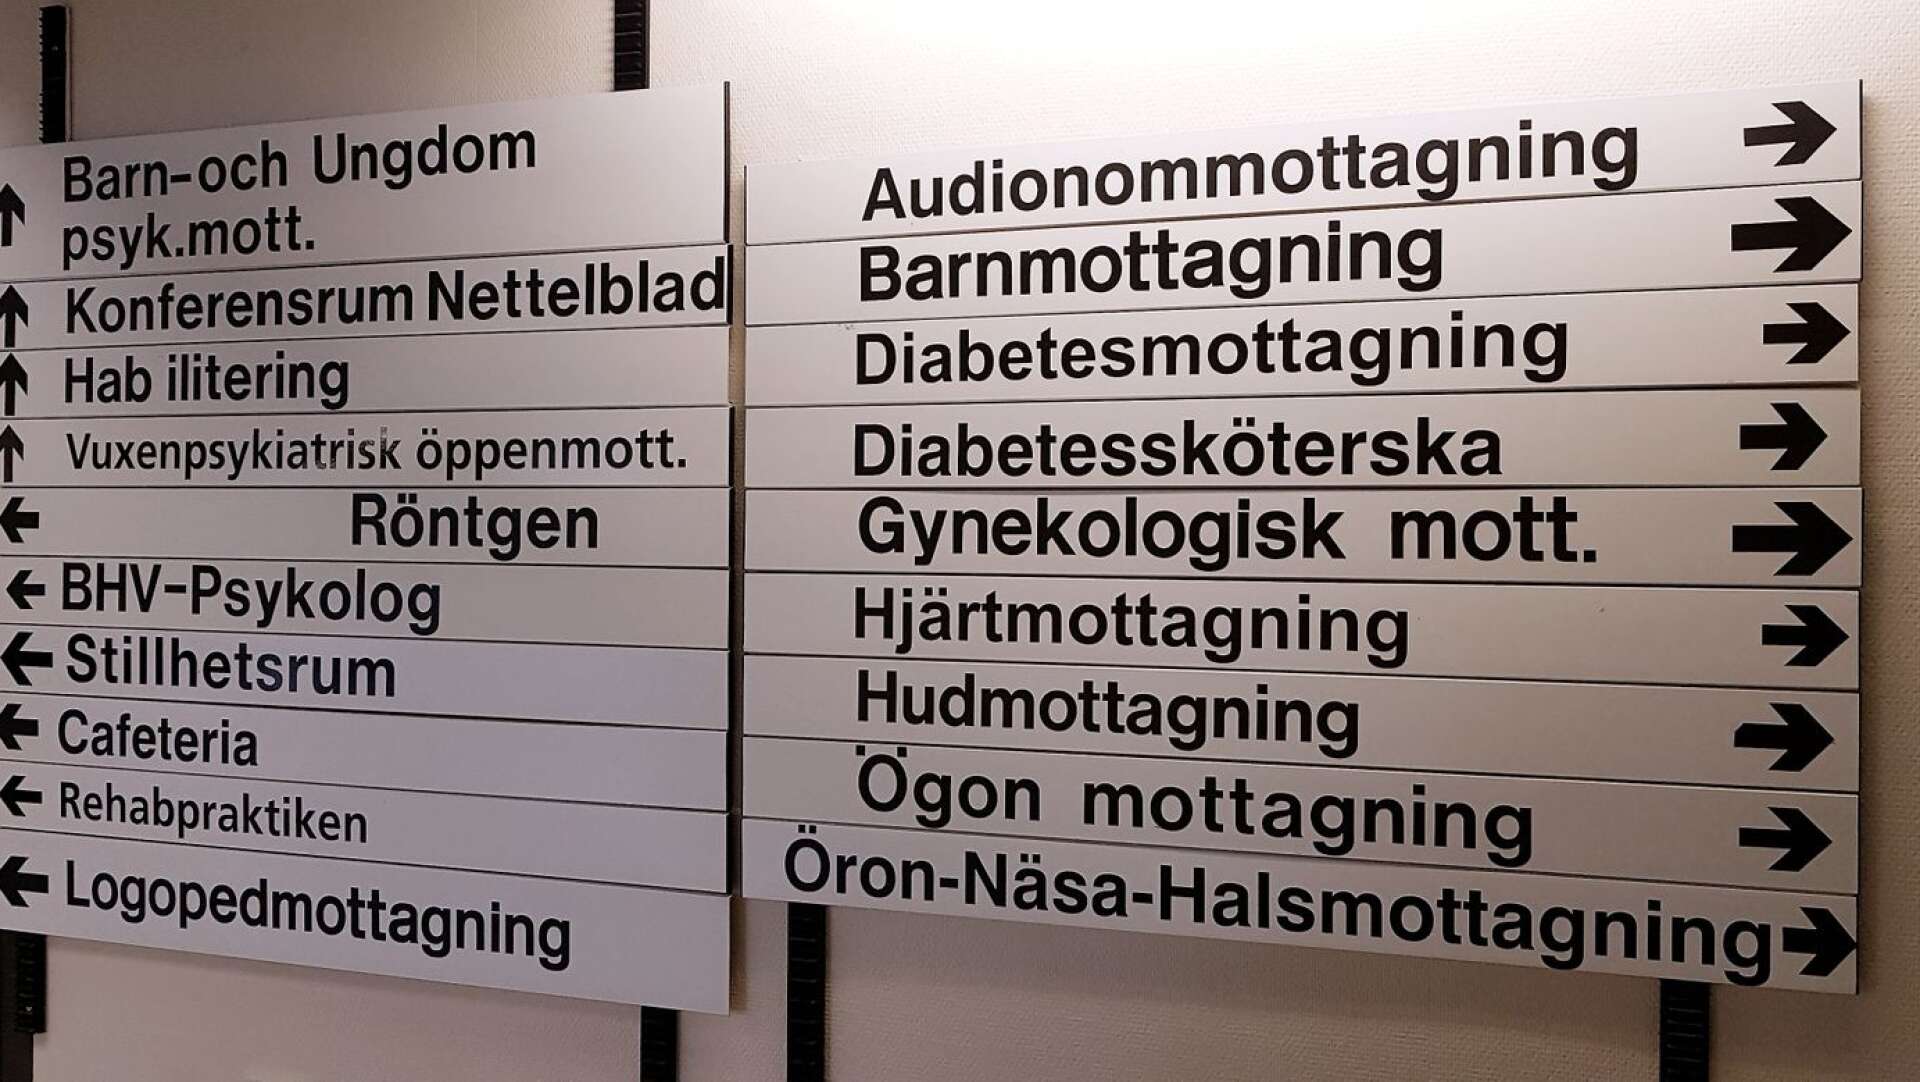 Vuxenpsykiatrin i Dalsland ska koncentreras kring öppenmottagningen på Dalslands sjukhus. Åmål blir en filial till Bäckefors.